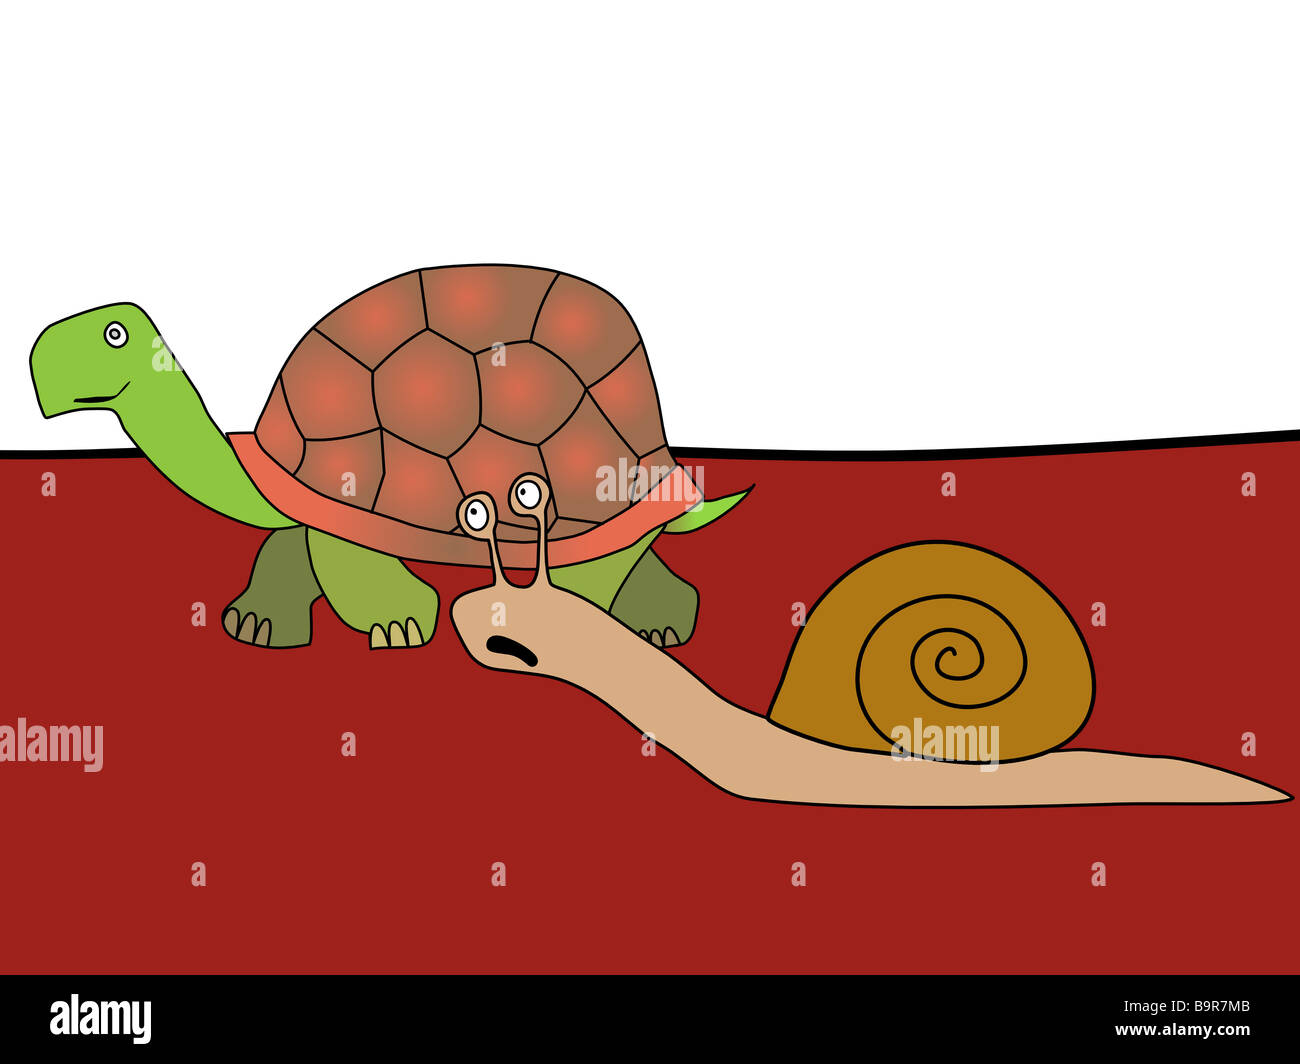 Fast and Furious - dessin animé humoristique. Escargot et tortue. Lambin et express. Dessin à la main. Banque D'Images